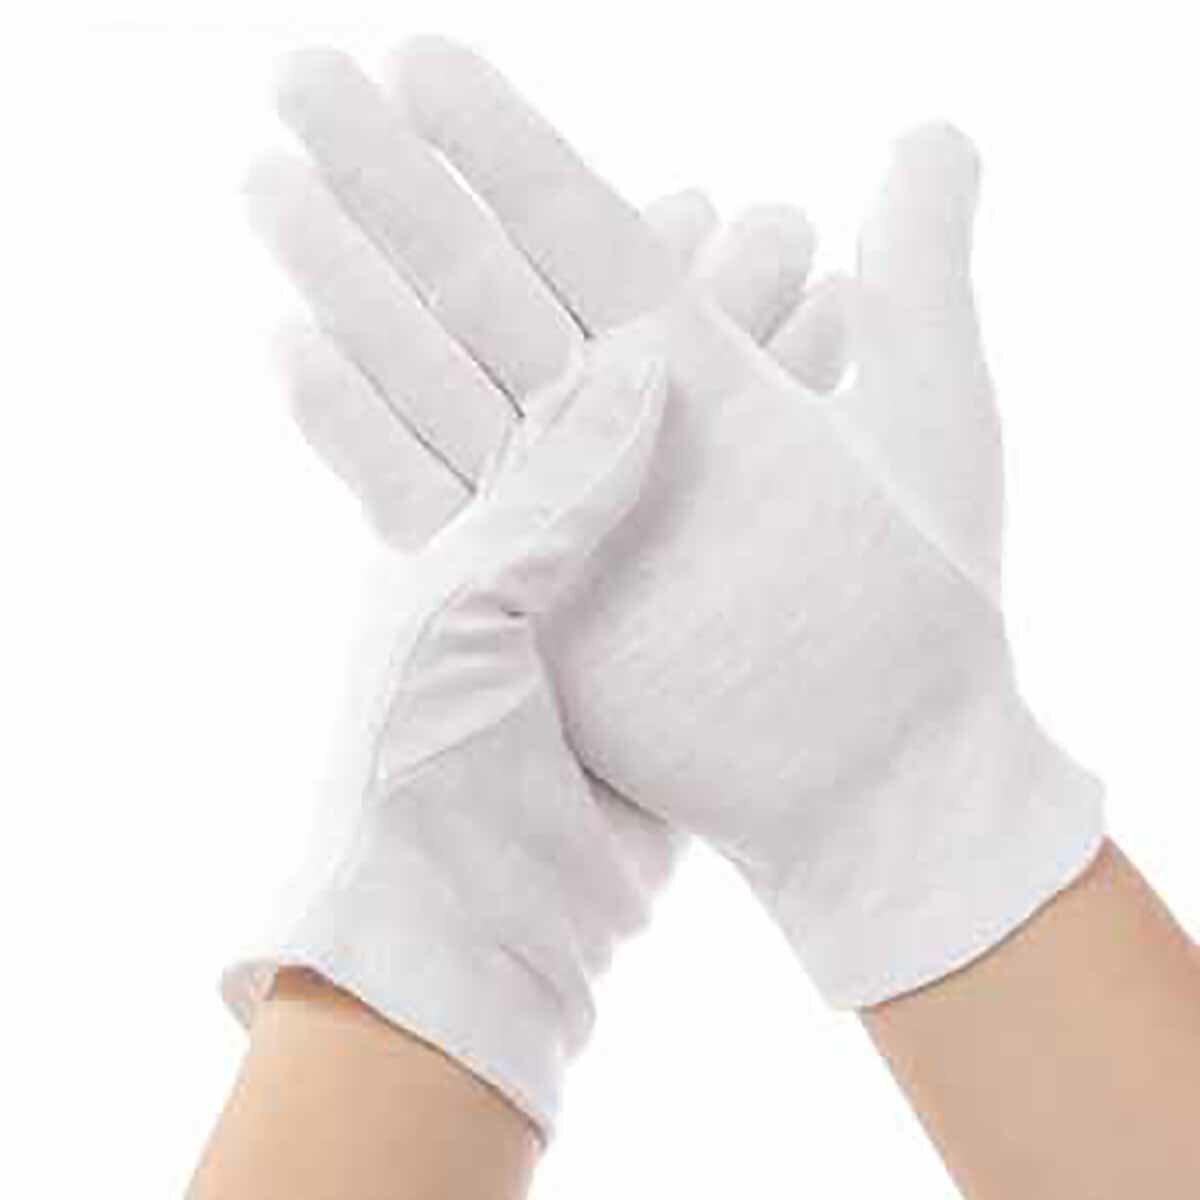 12 paires de gants jetables blancs Soft coton de sécurité résistant à l'huile camping pique-nique barbecue